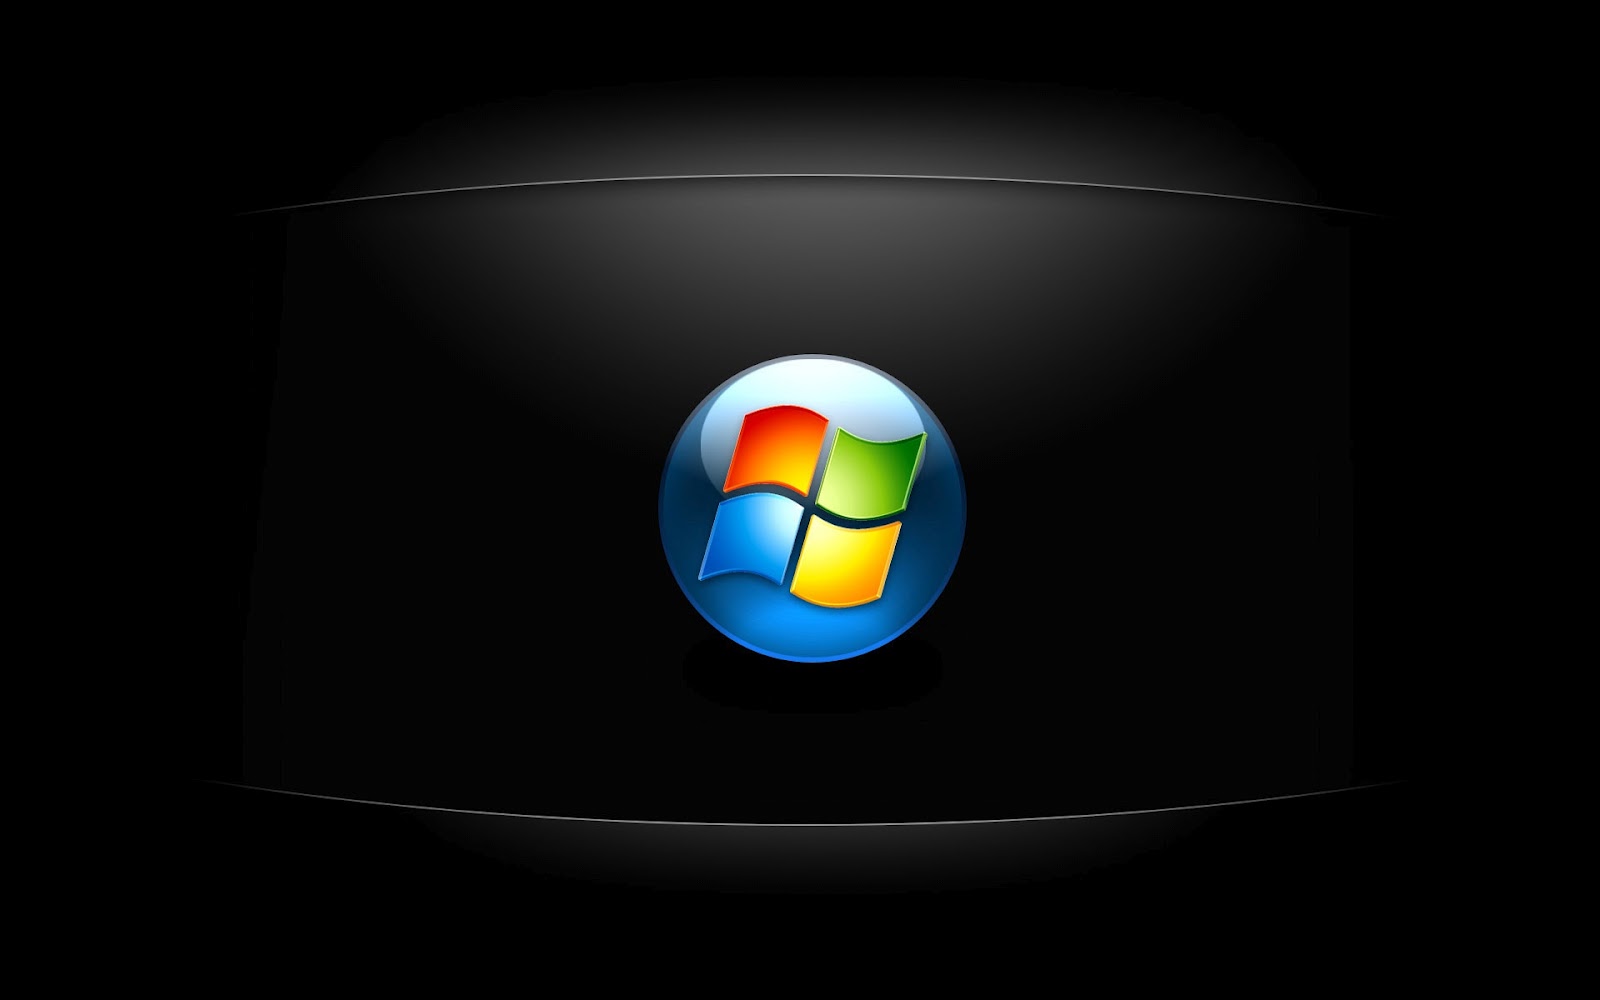 50+] Video Wallpaper for Windows 7 - WallpaperSafari